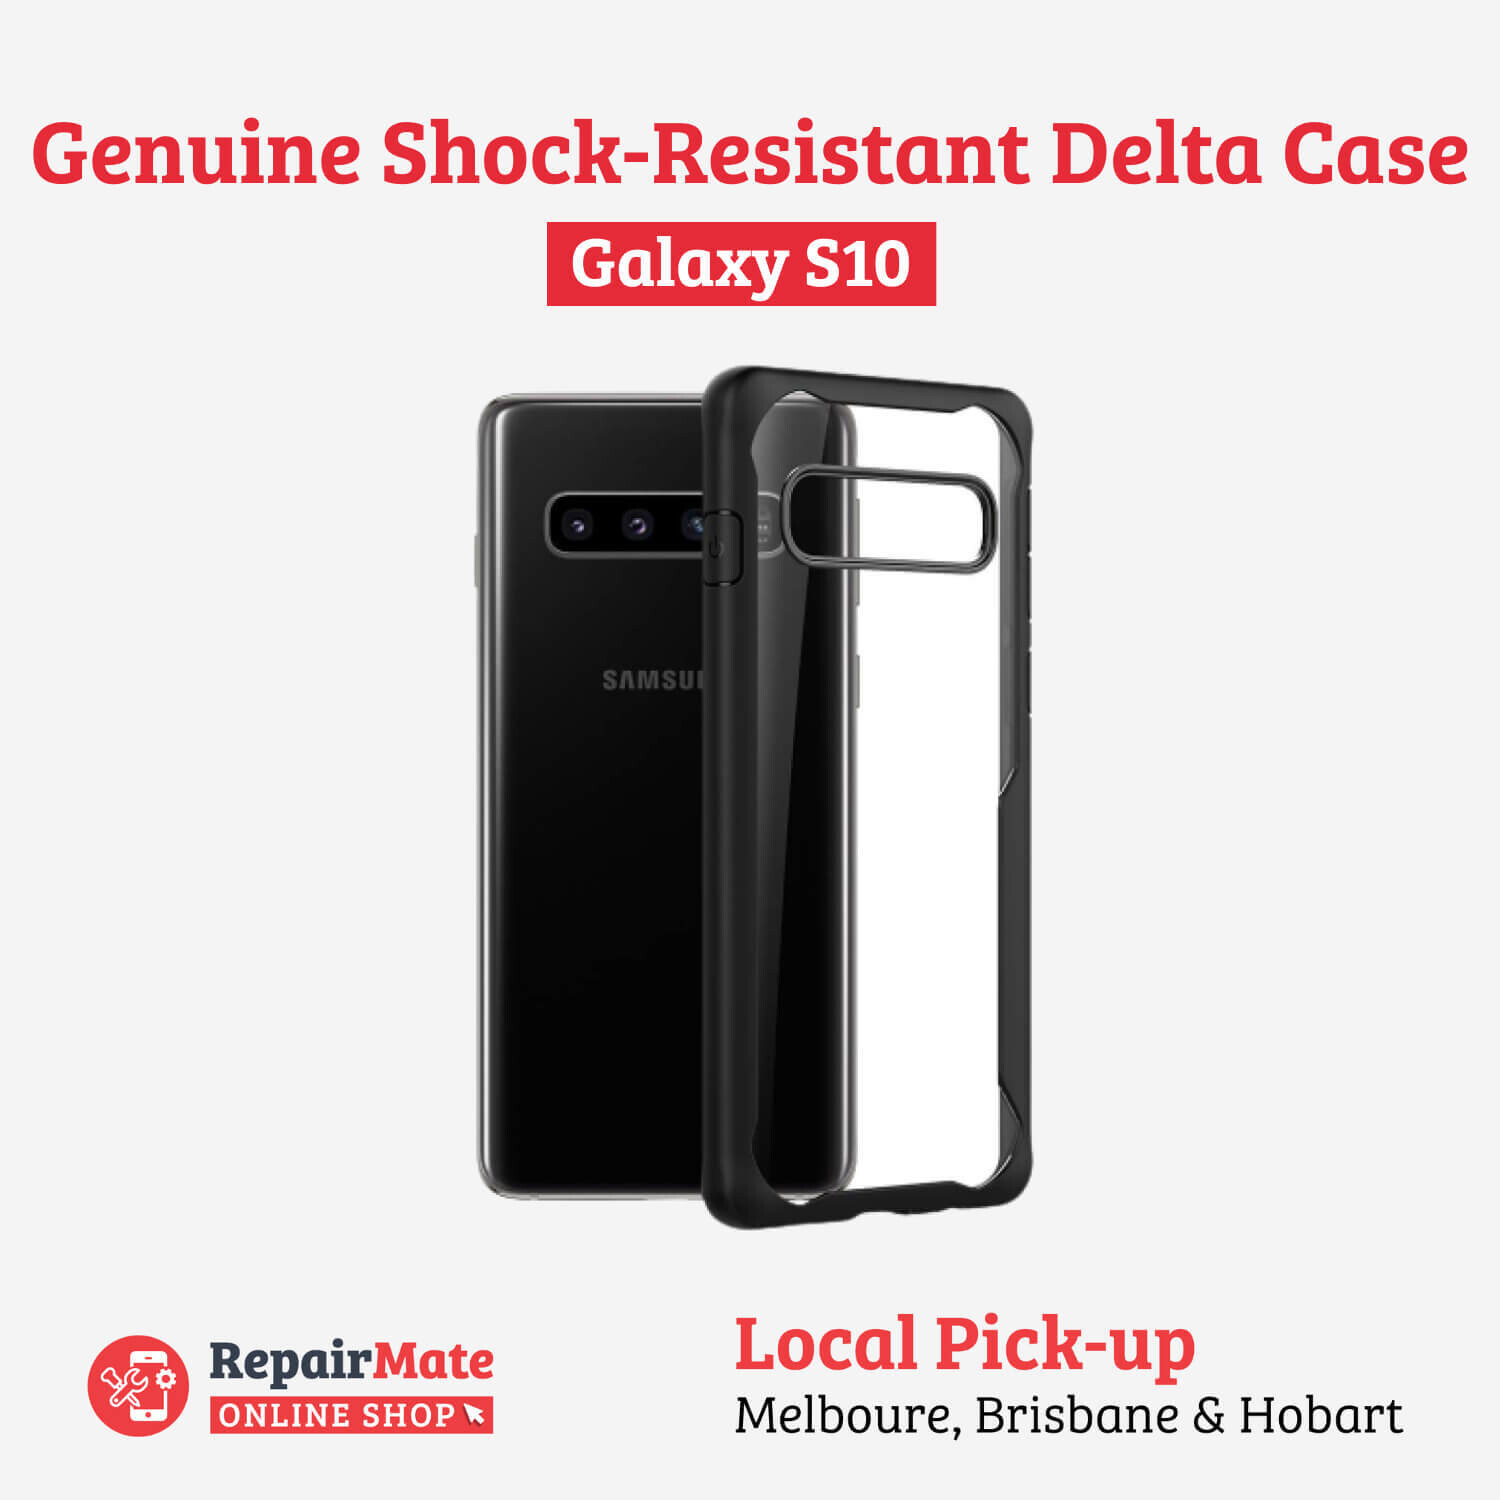 Samsung Galaxy S10 Genuine Shock-Resistant Delta Case